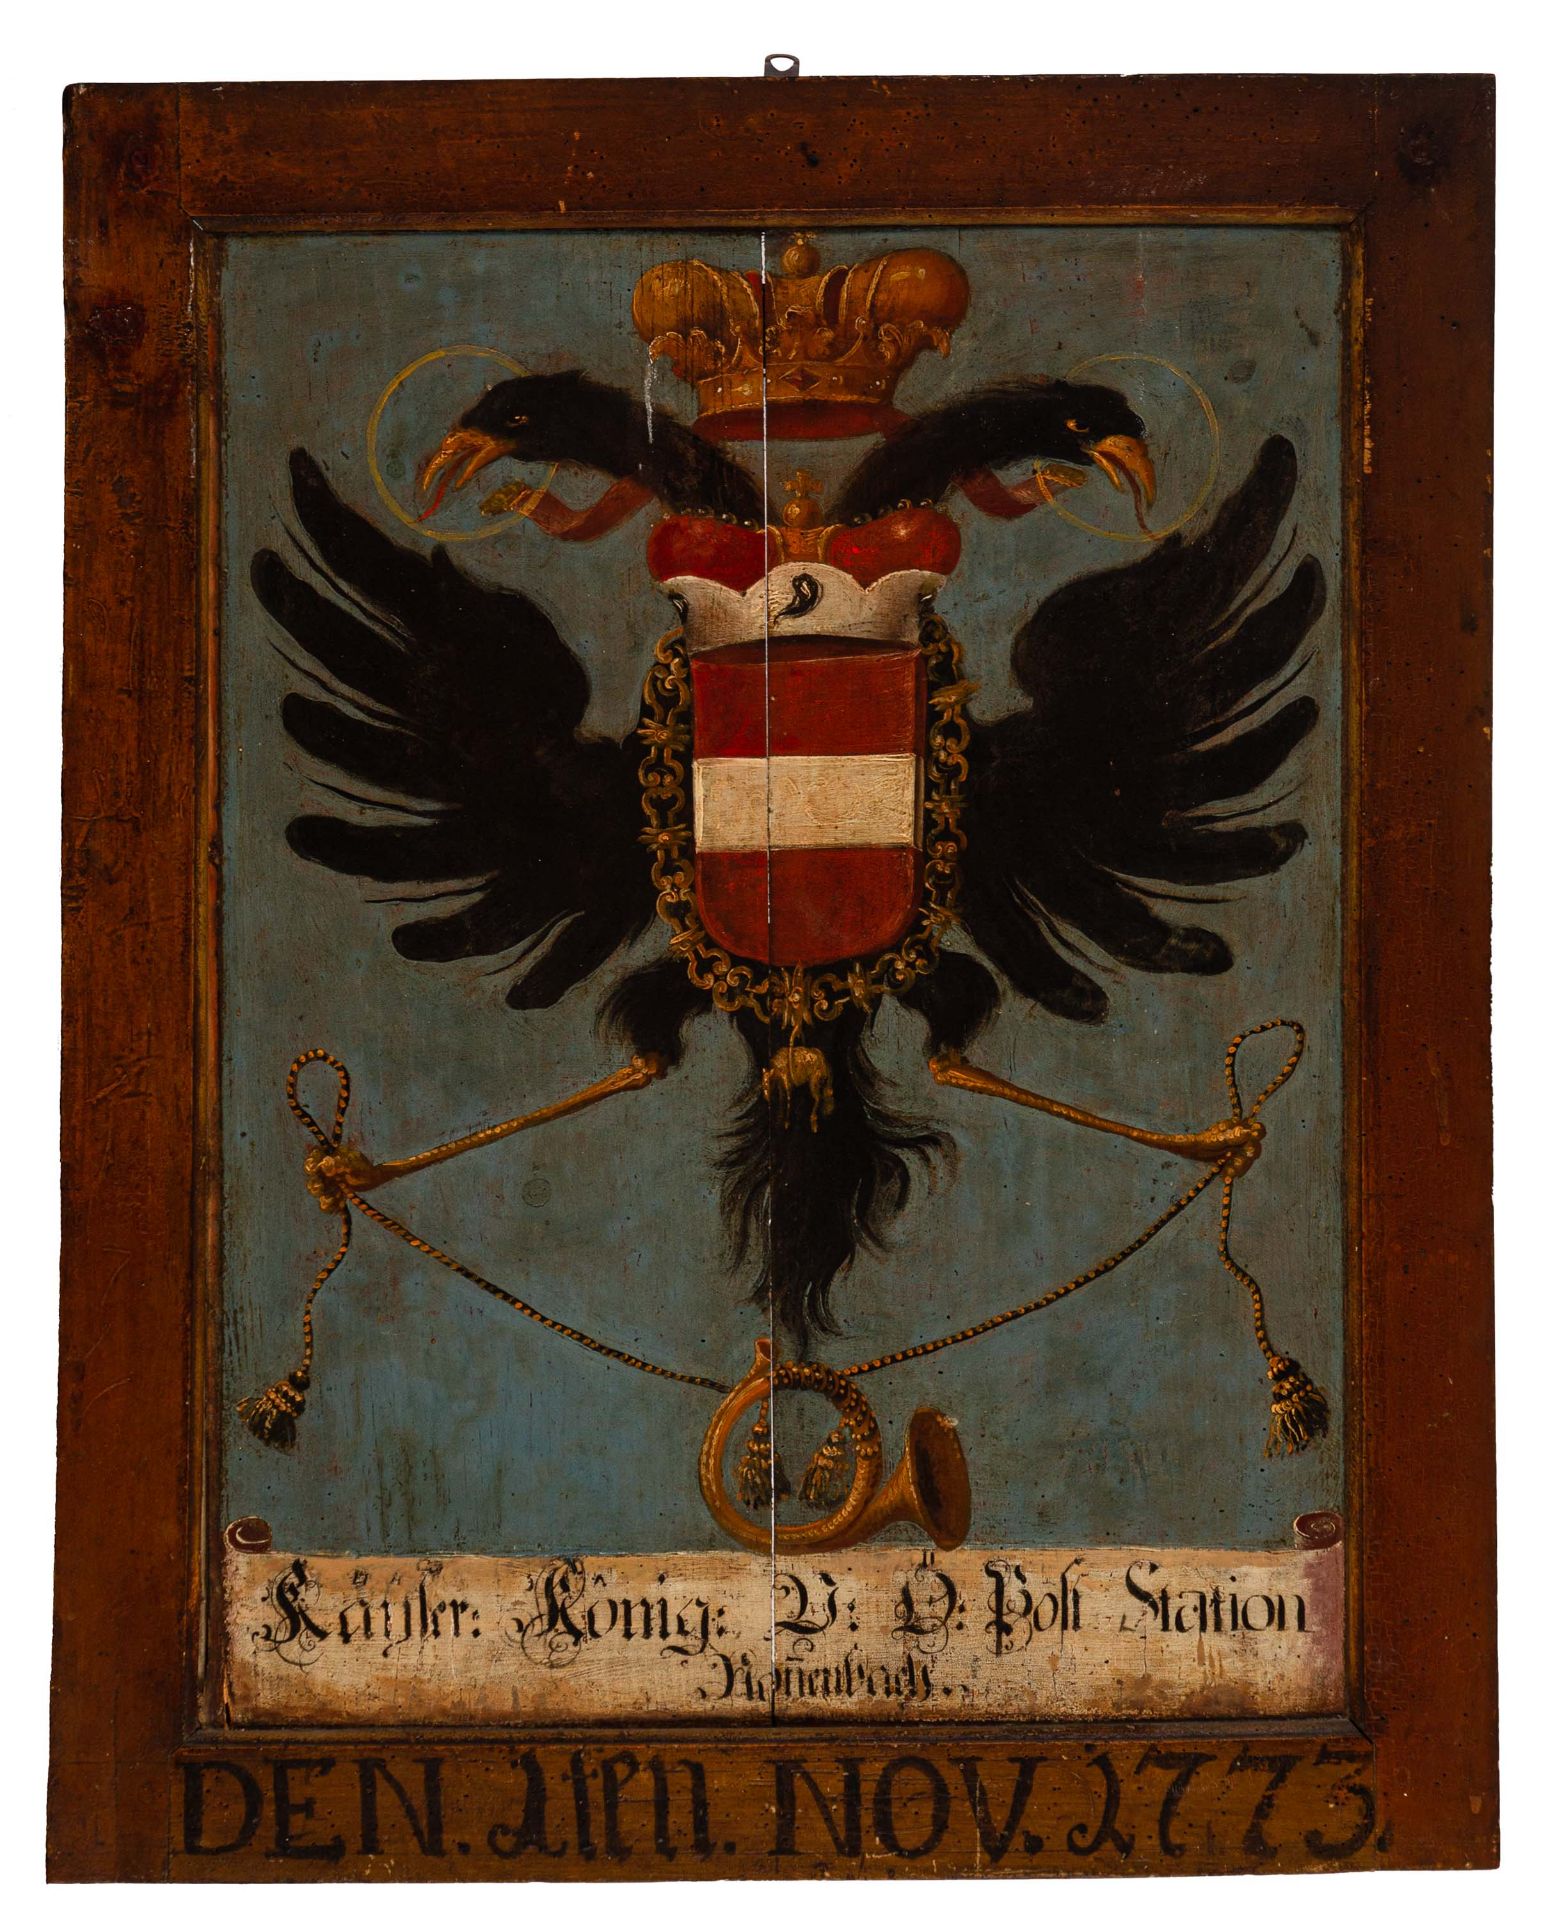 Wappentafel der Kaiserlichen Reichspost 1773